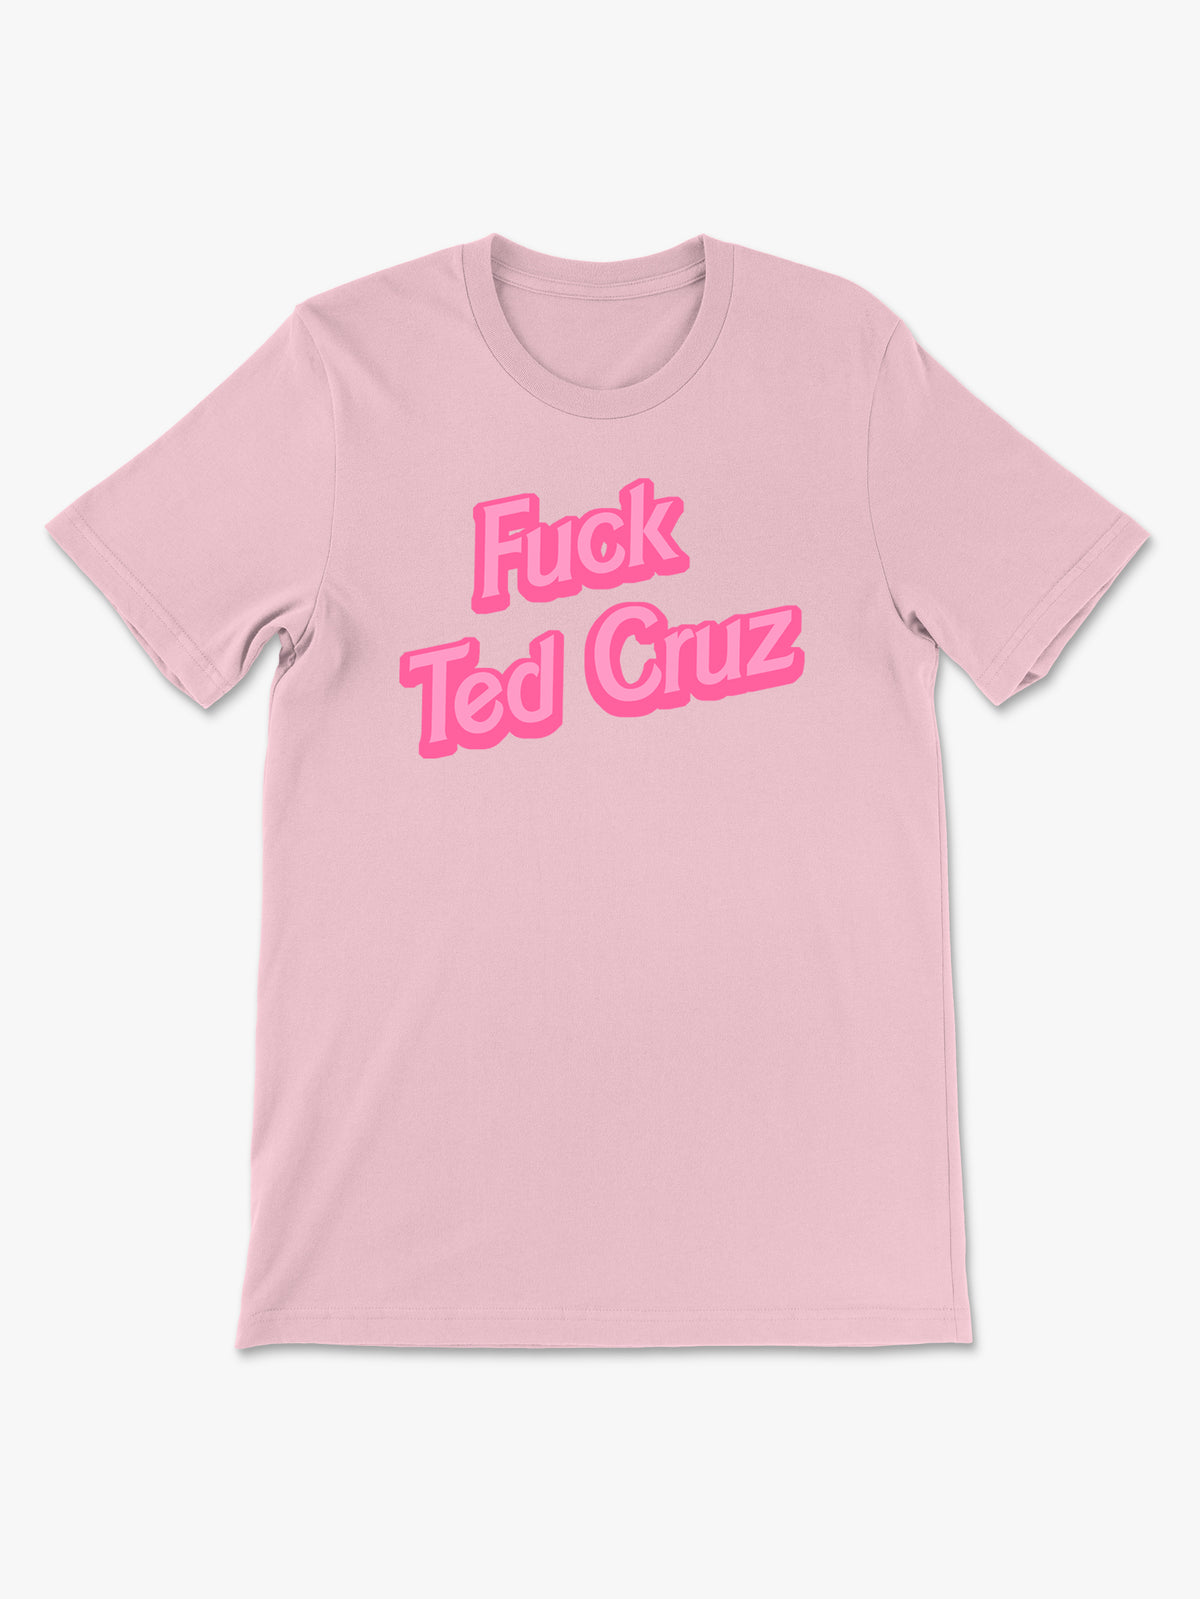 Fuck Ted Cruz by Ponytail Mafia